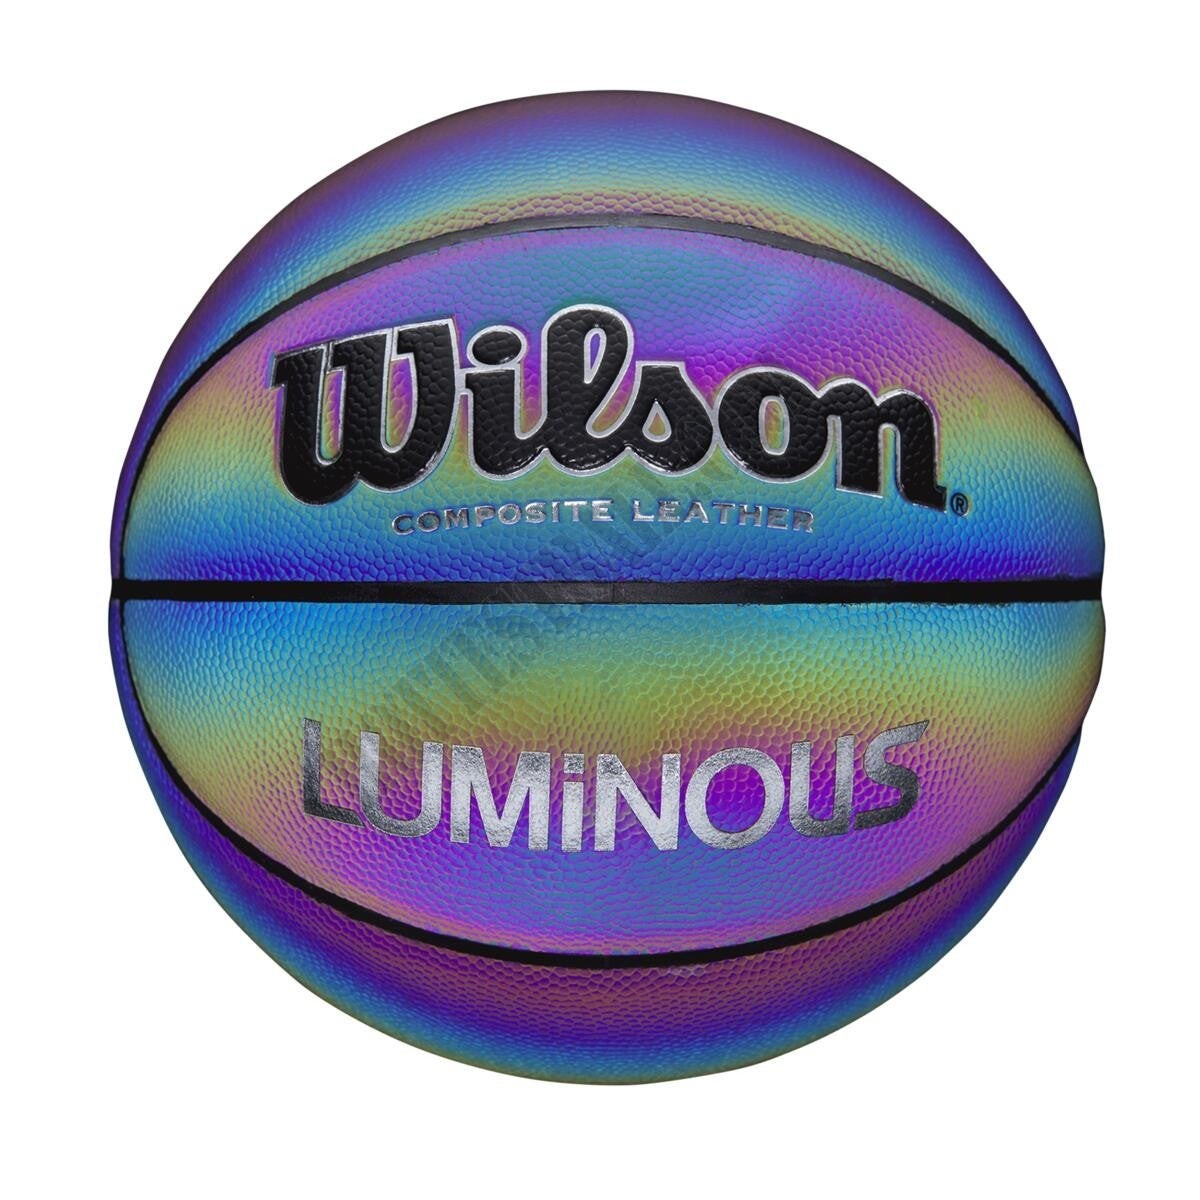 Luminous Slick Trainer Basketball - Wilson Discount Store - Luminous Slick Trainer Basketball - Wilson Discount Store